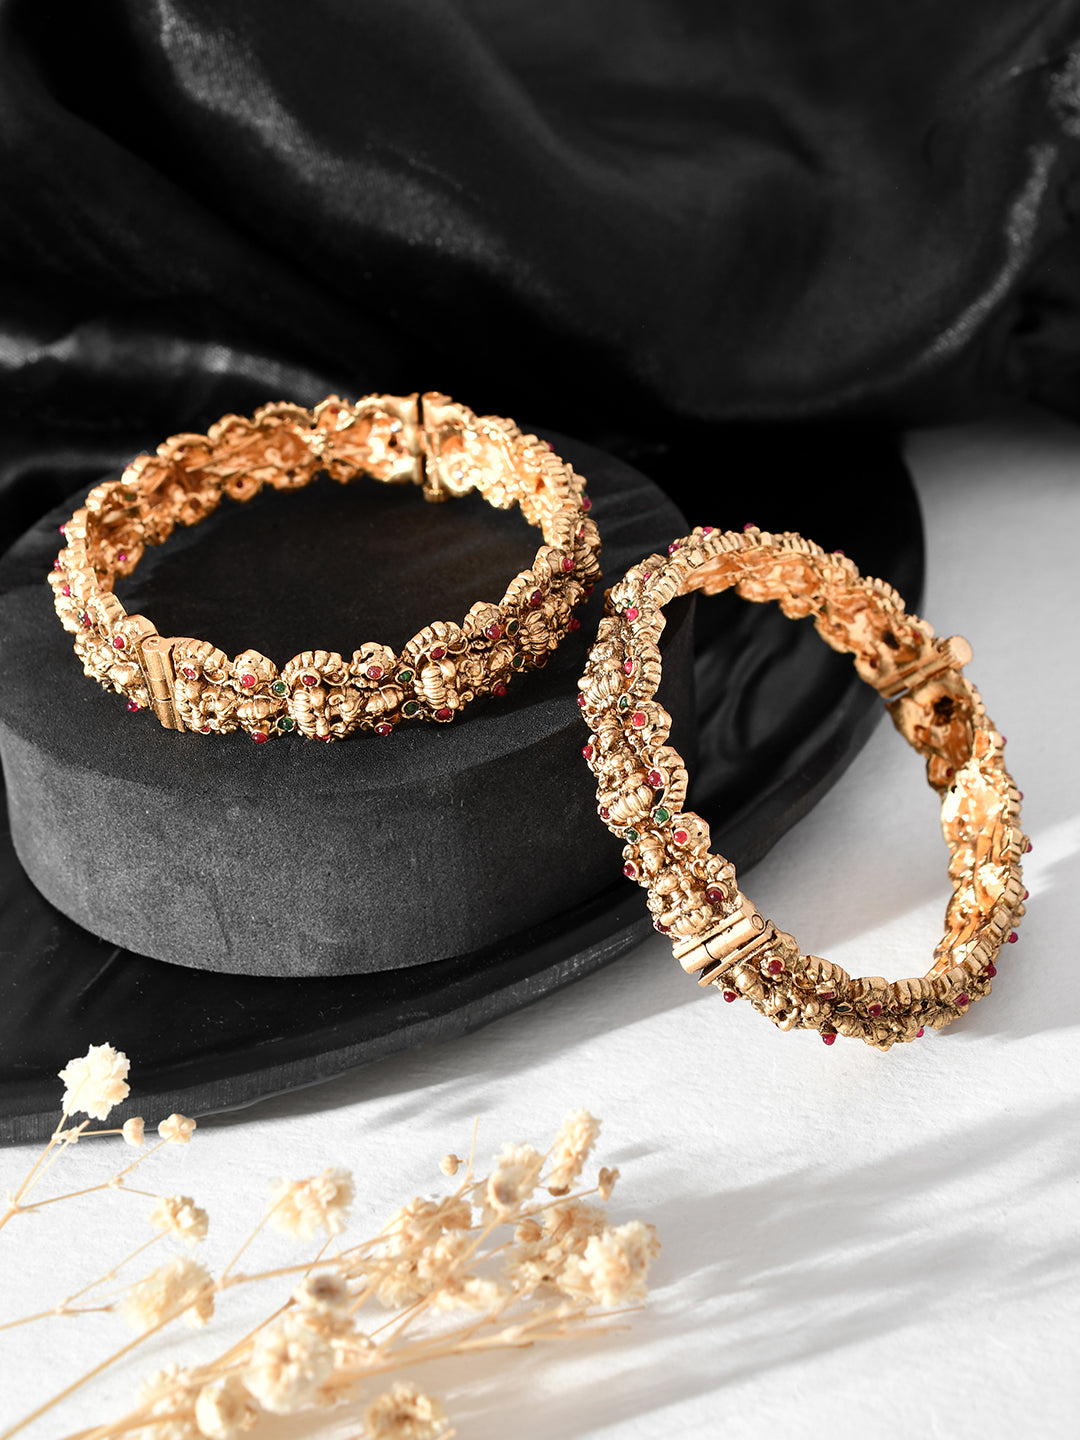 18K Rose & White Gold Polish Diamond Bracelet For Women - 235-DBR243 in  9.900 Grams